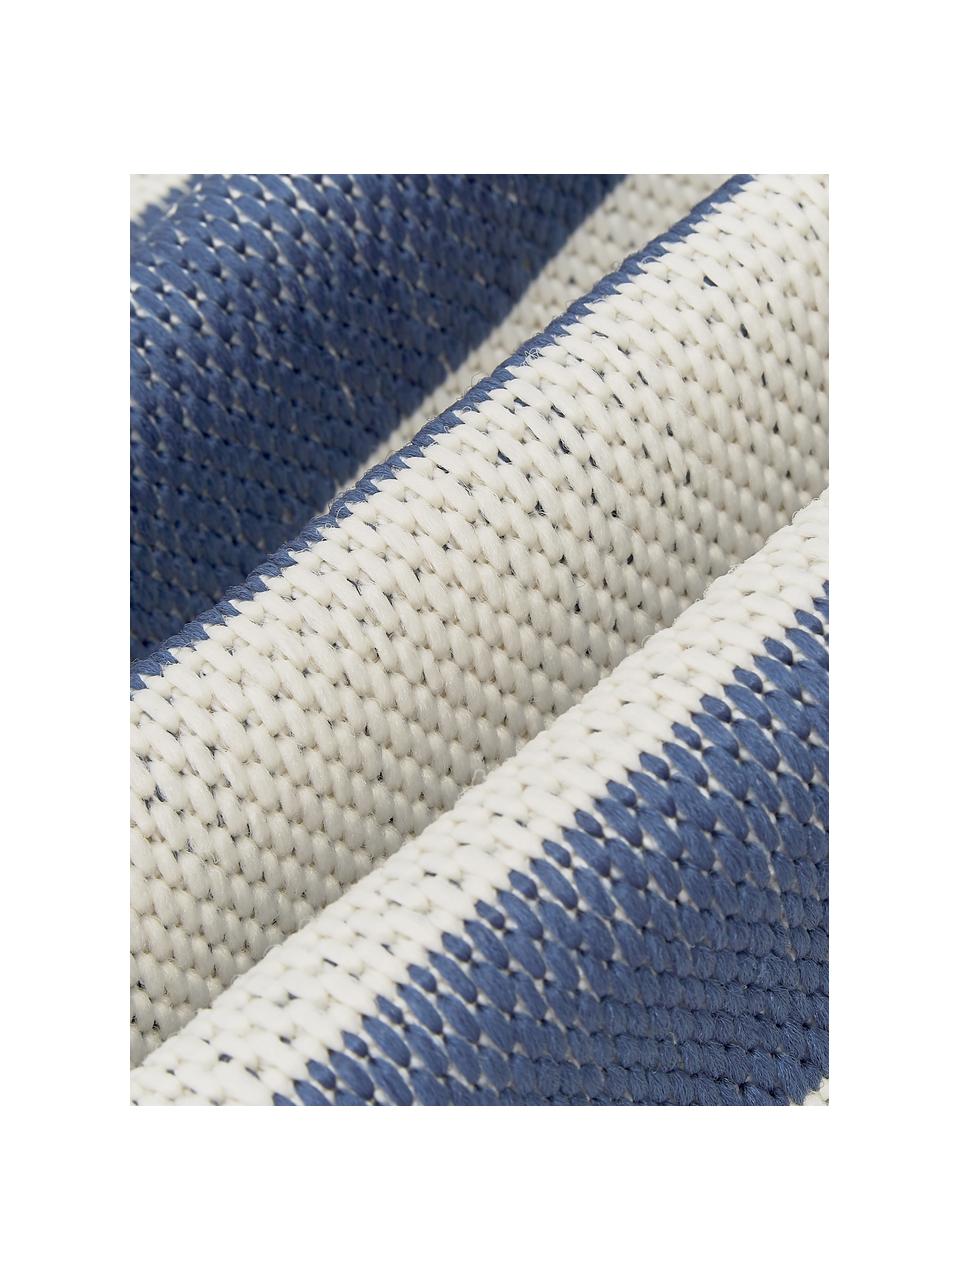 Gestreifter In- & Outdoor-Teppich Axa in Blau/Cremeweiß, 86% Polypropylen, 14% Polyester, Cremeweiß, Blau, B 200 x L 290 cm (Größe L)